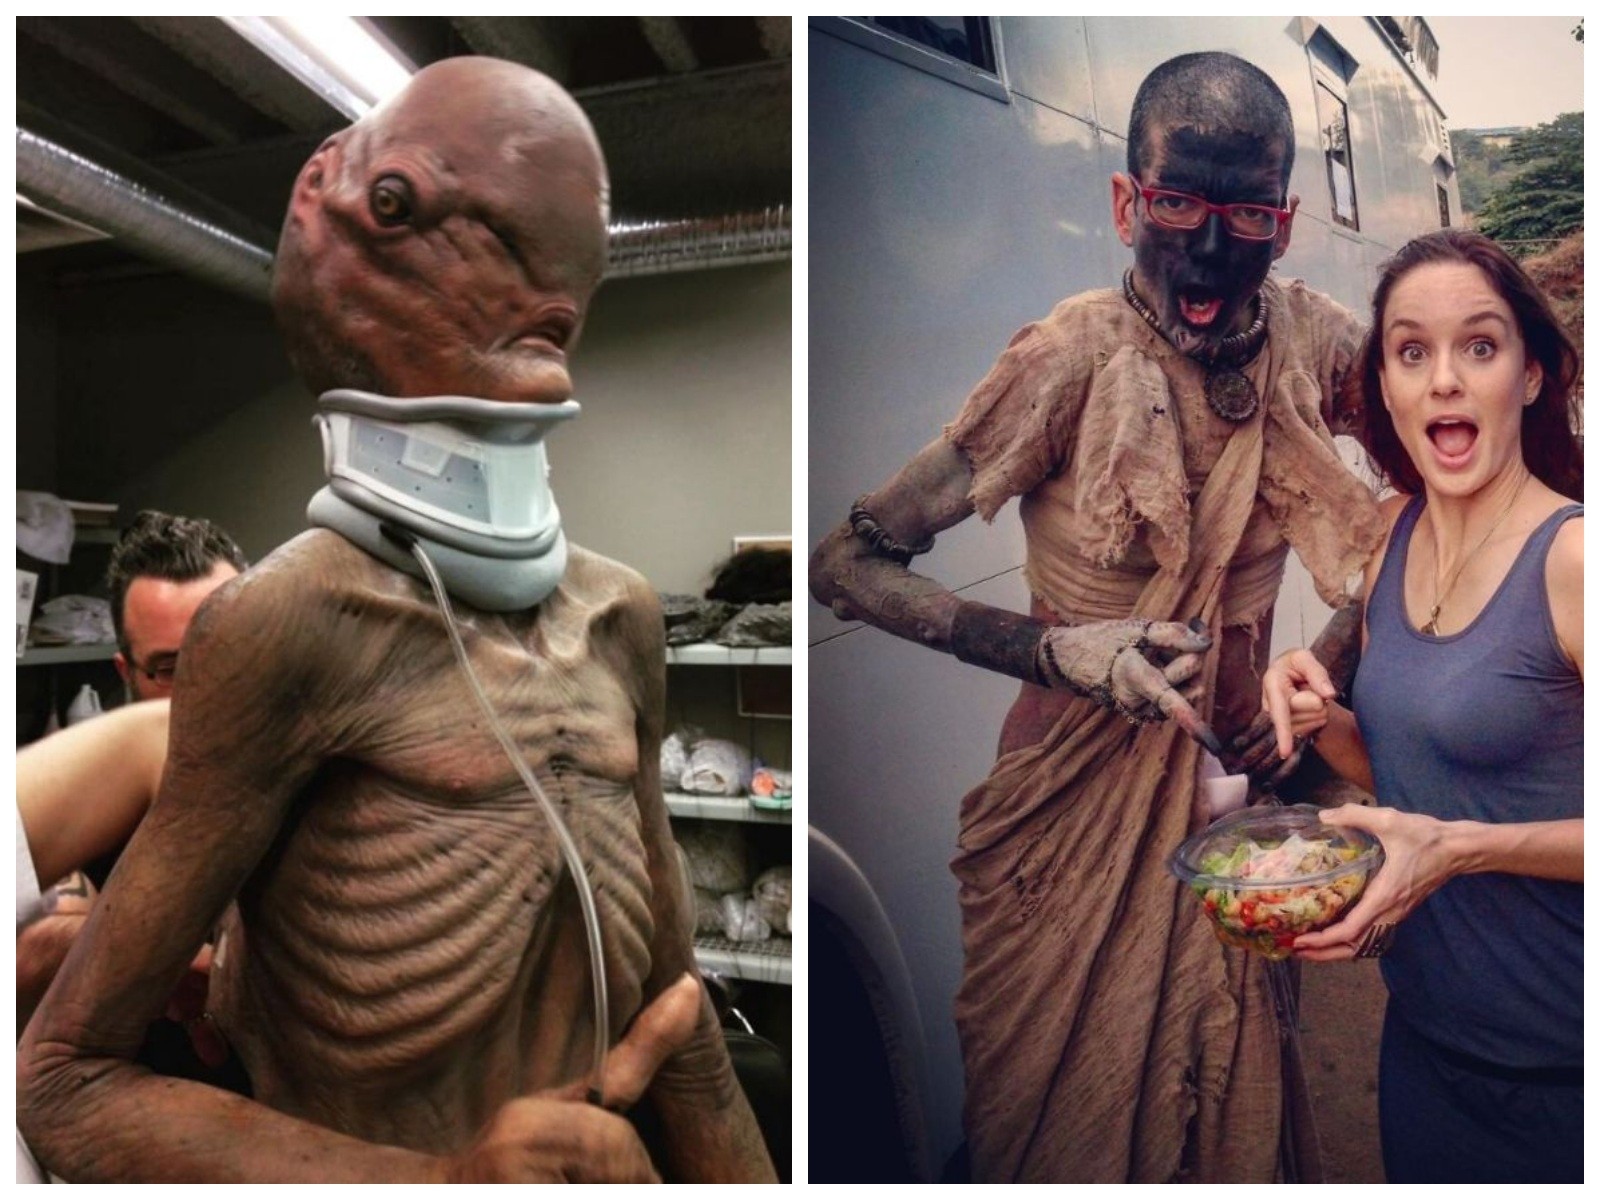 Слева образ из фильма "Астрал", справа — из "Ходячих мертвецов". Коллаж © LIFE. Фото © instagram/jbotet